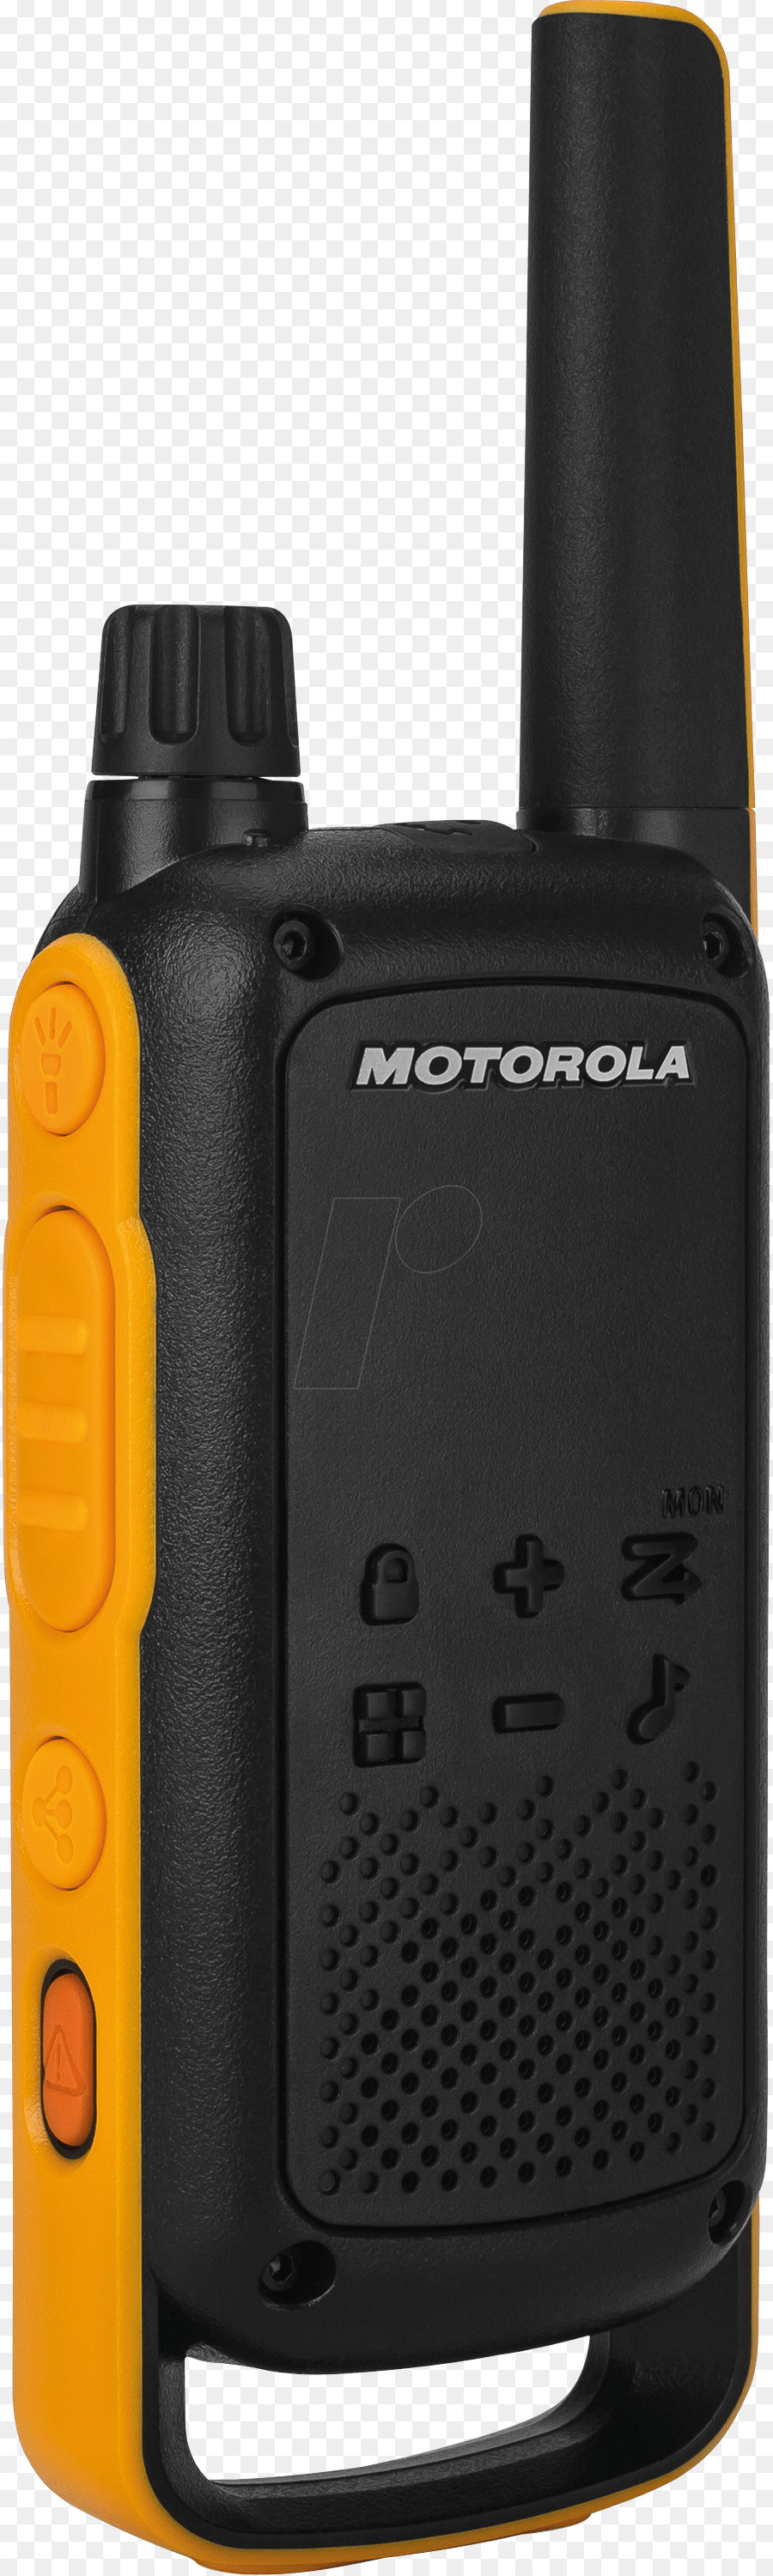 Las Radios Motorola T82 Extrema 188069，Pmr446 PNG